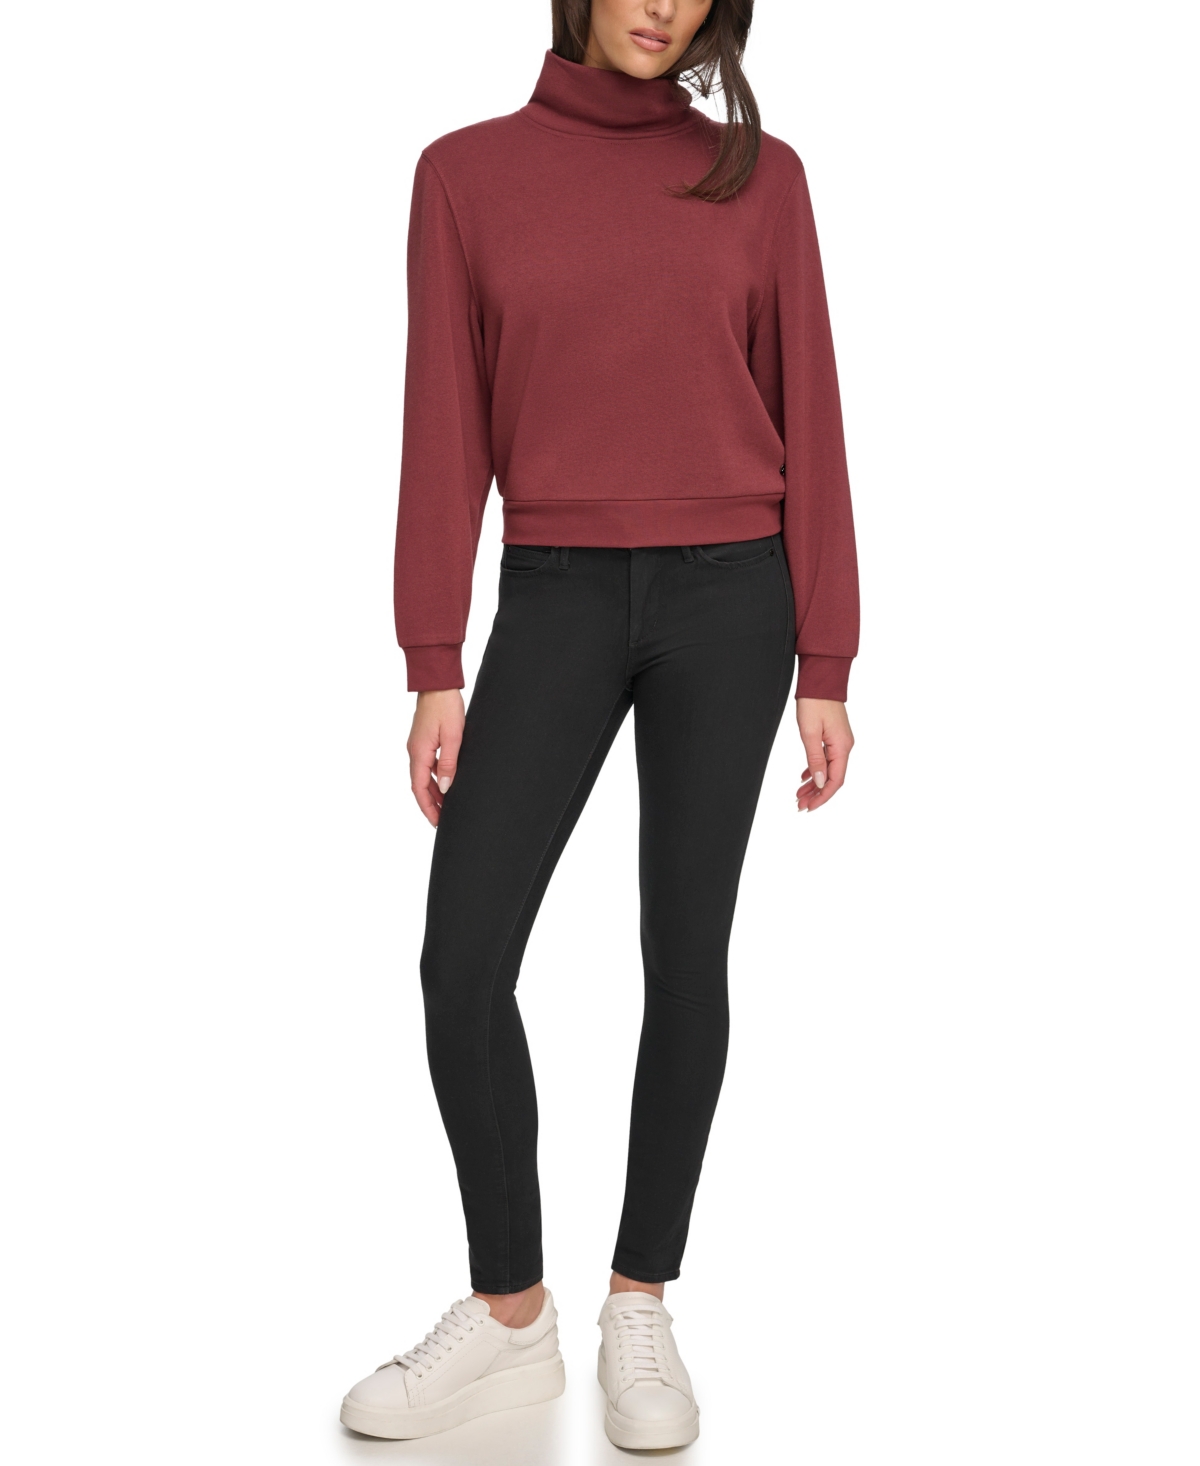 Andrew Marc Sport Women's Fleece Turtleneck Long Sleeve Pullover Sweatshirt - Black